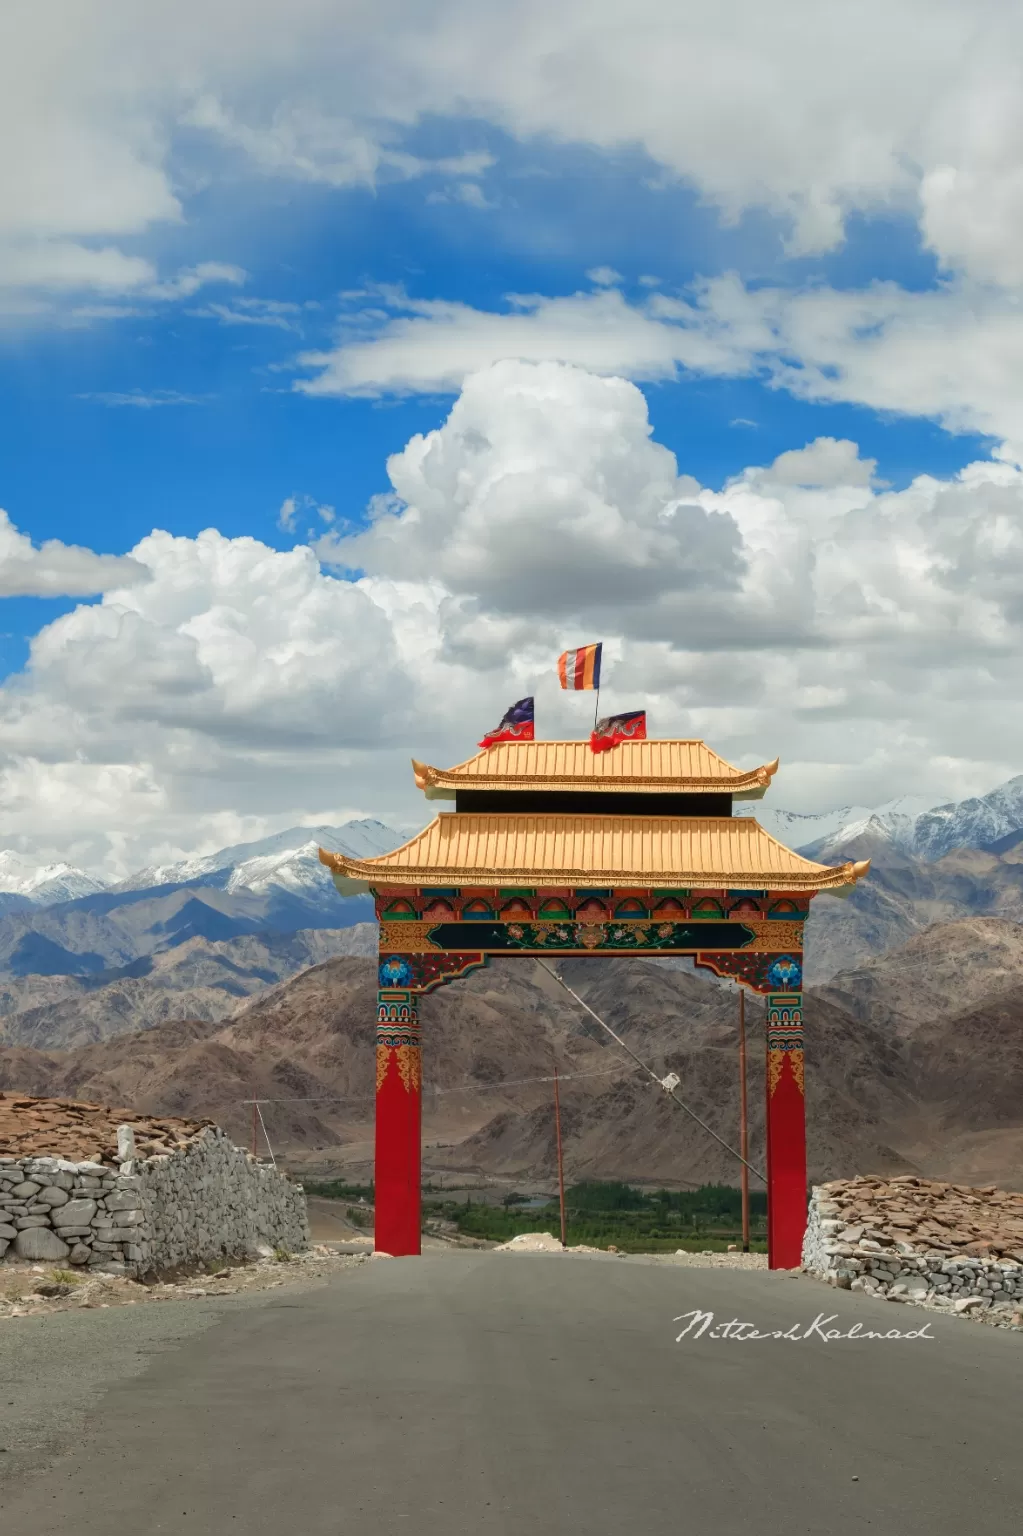 Photo of Ladakh By nitheshkalnad